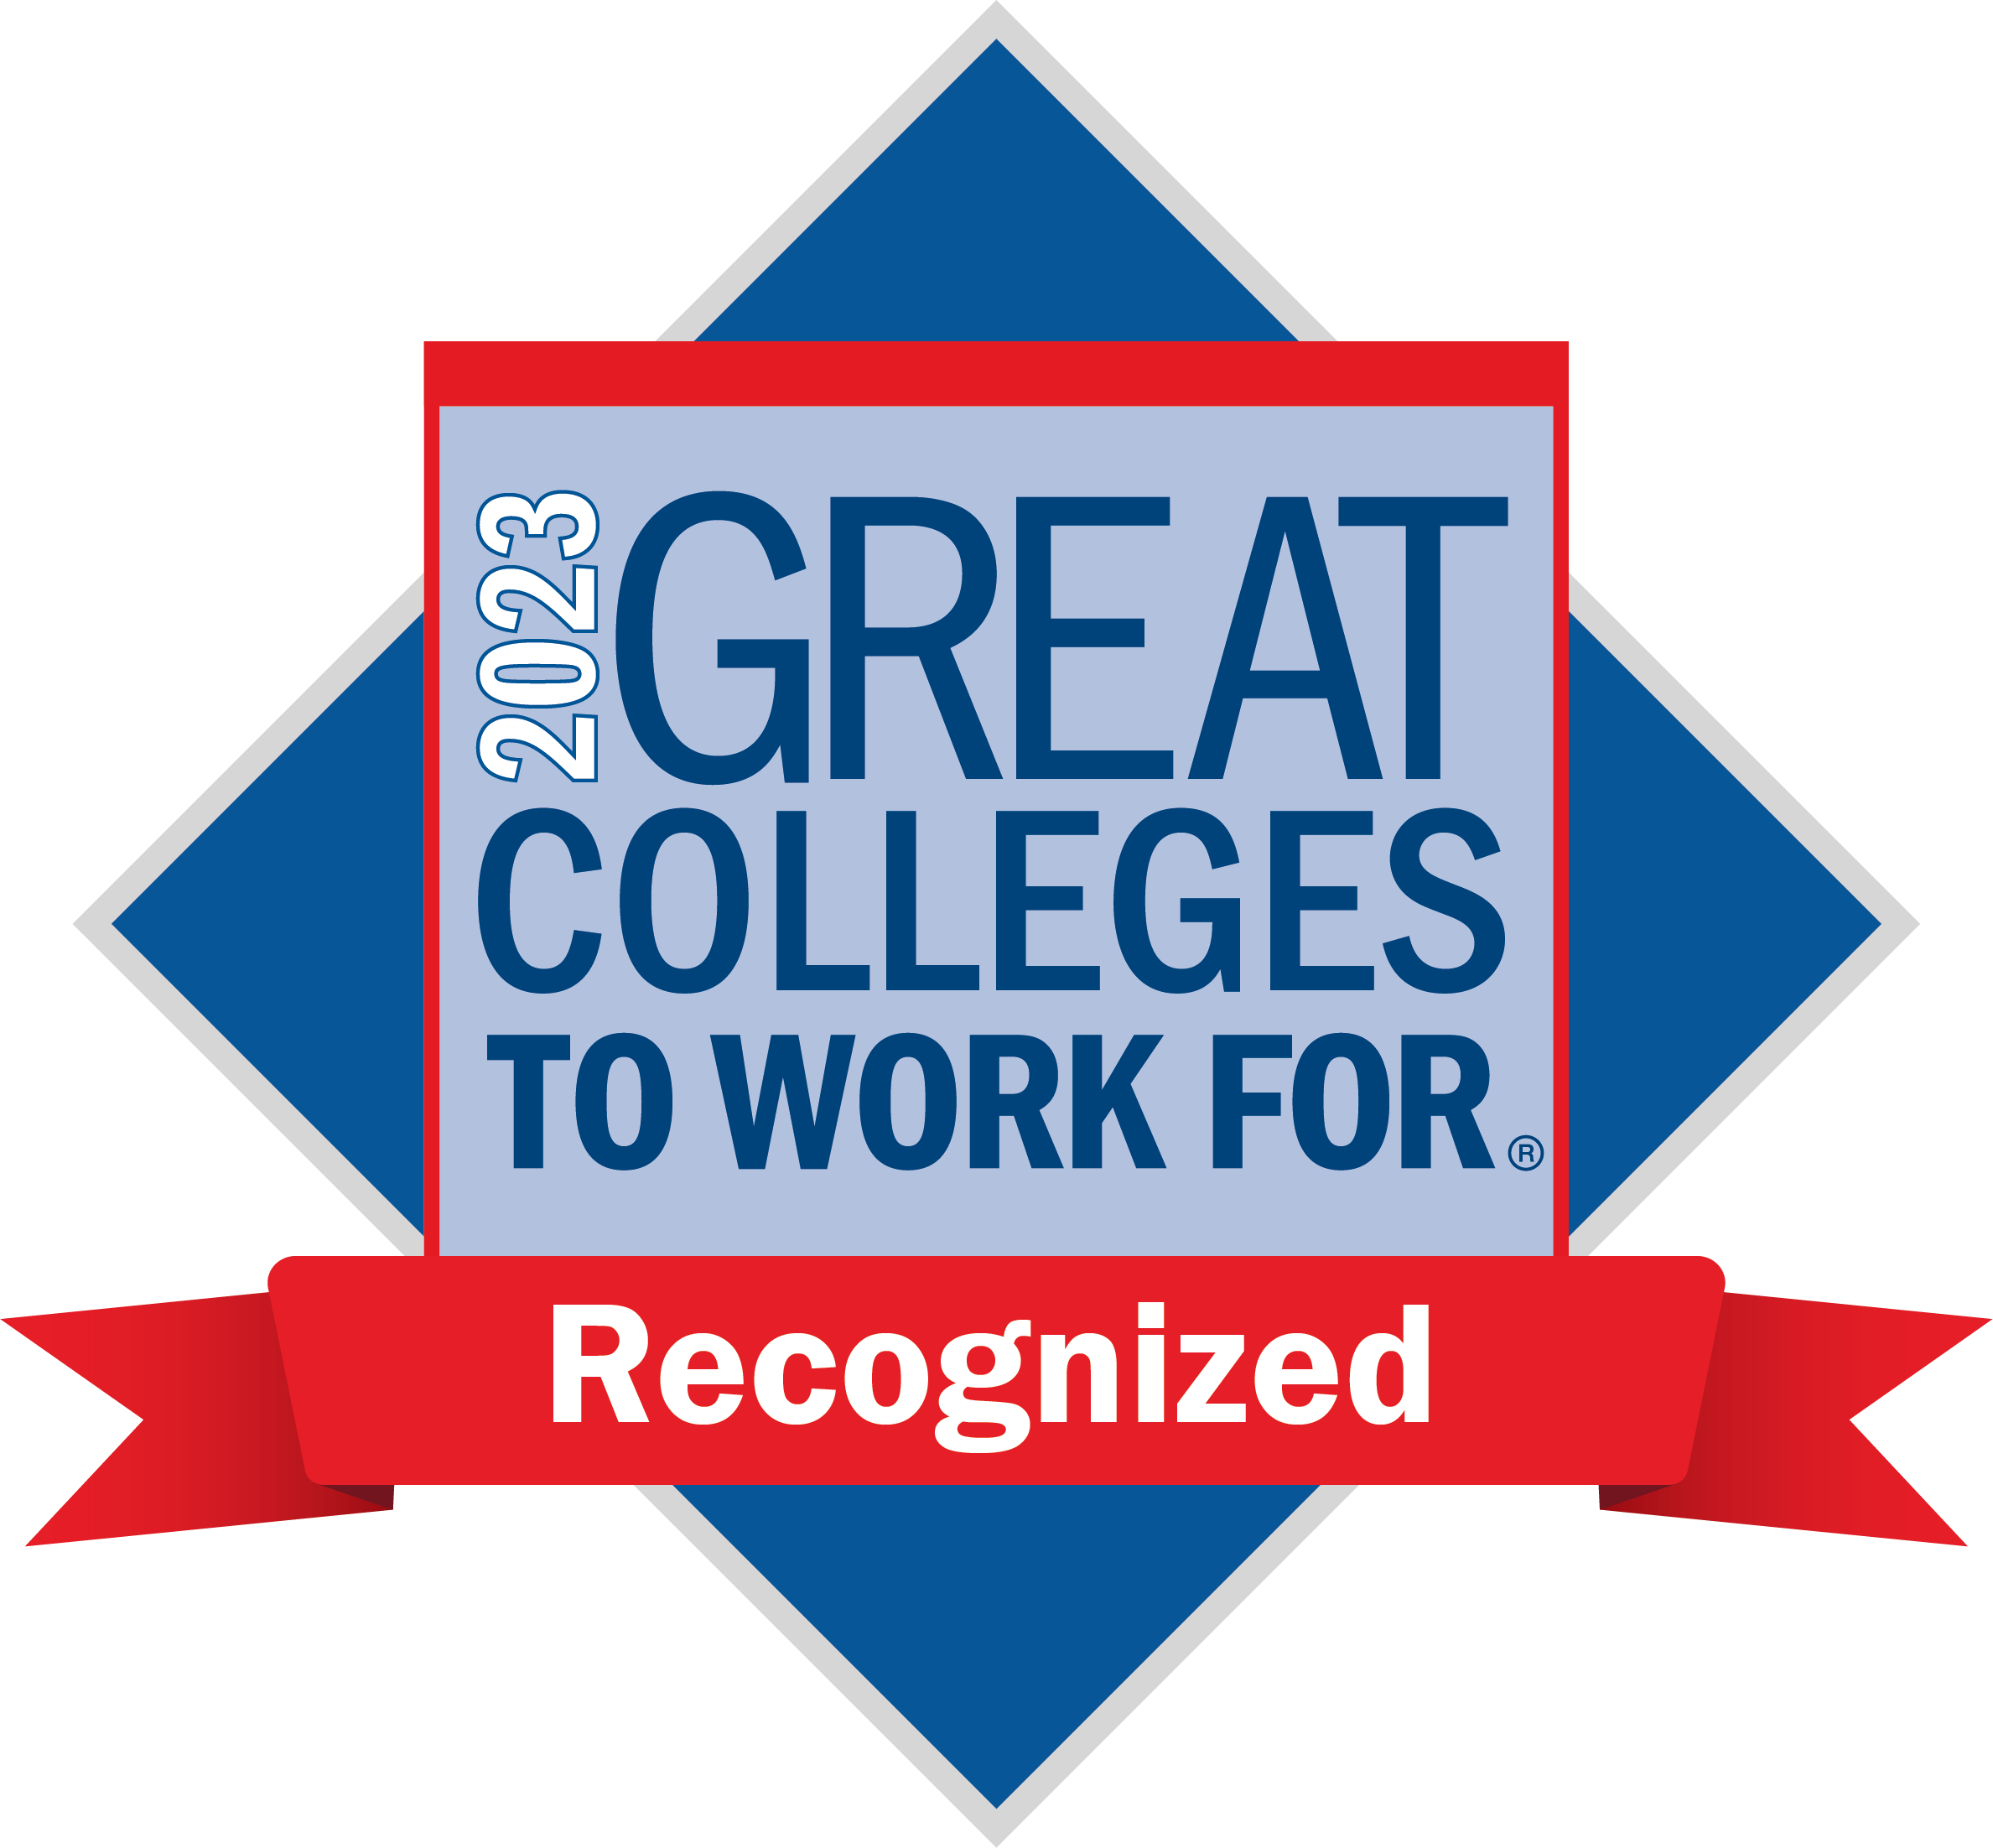 精东影业视频 is among 72 colleges and universities to receive Great Colleges to Work For recognition.